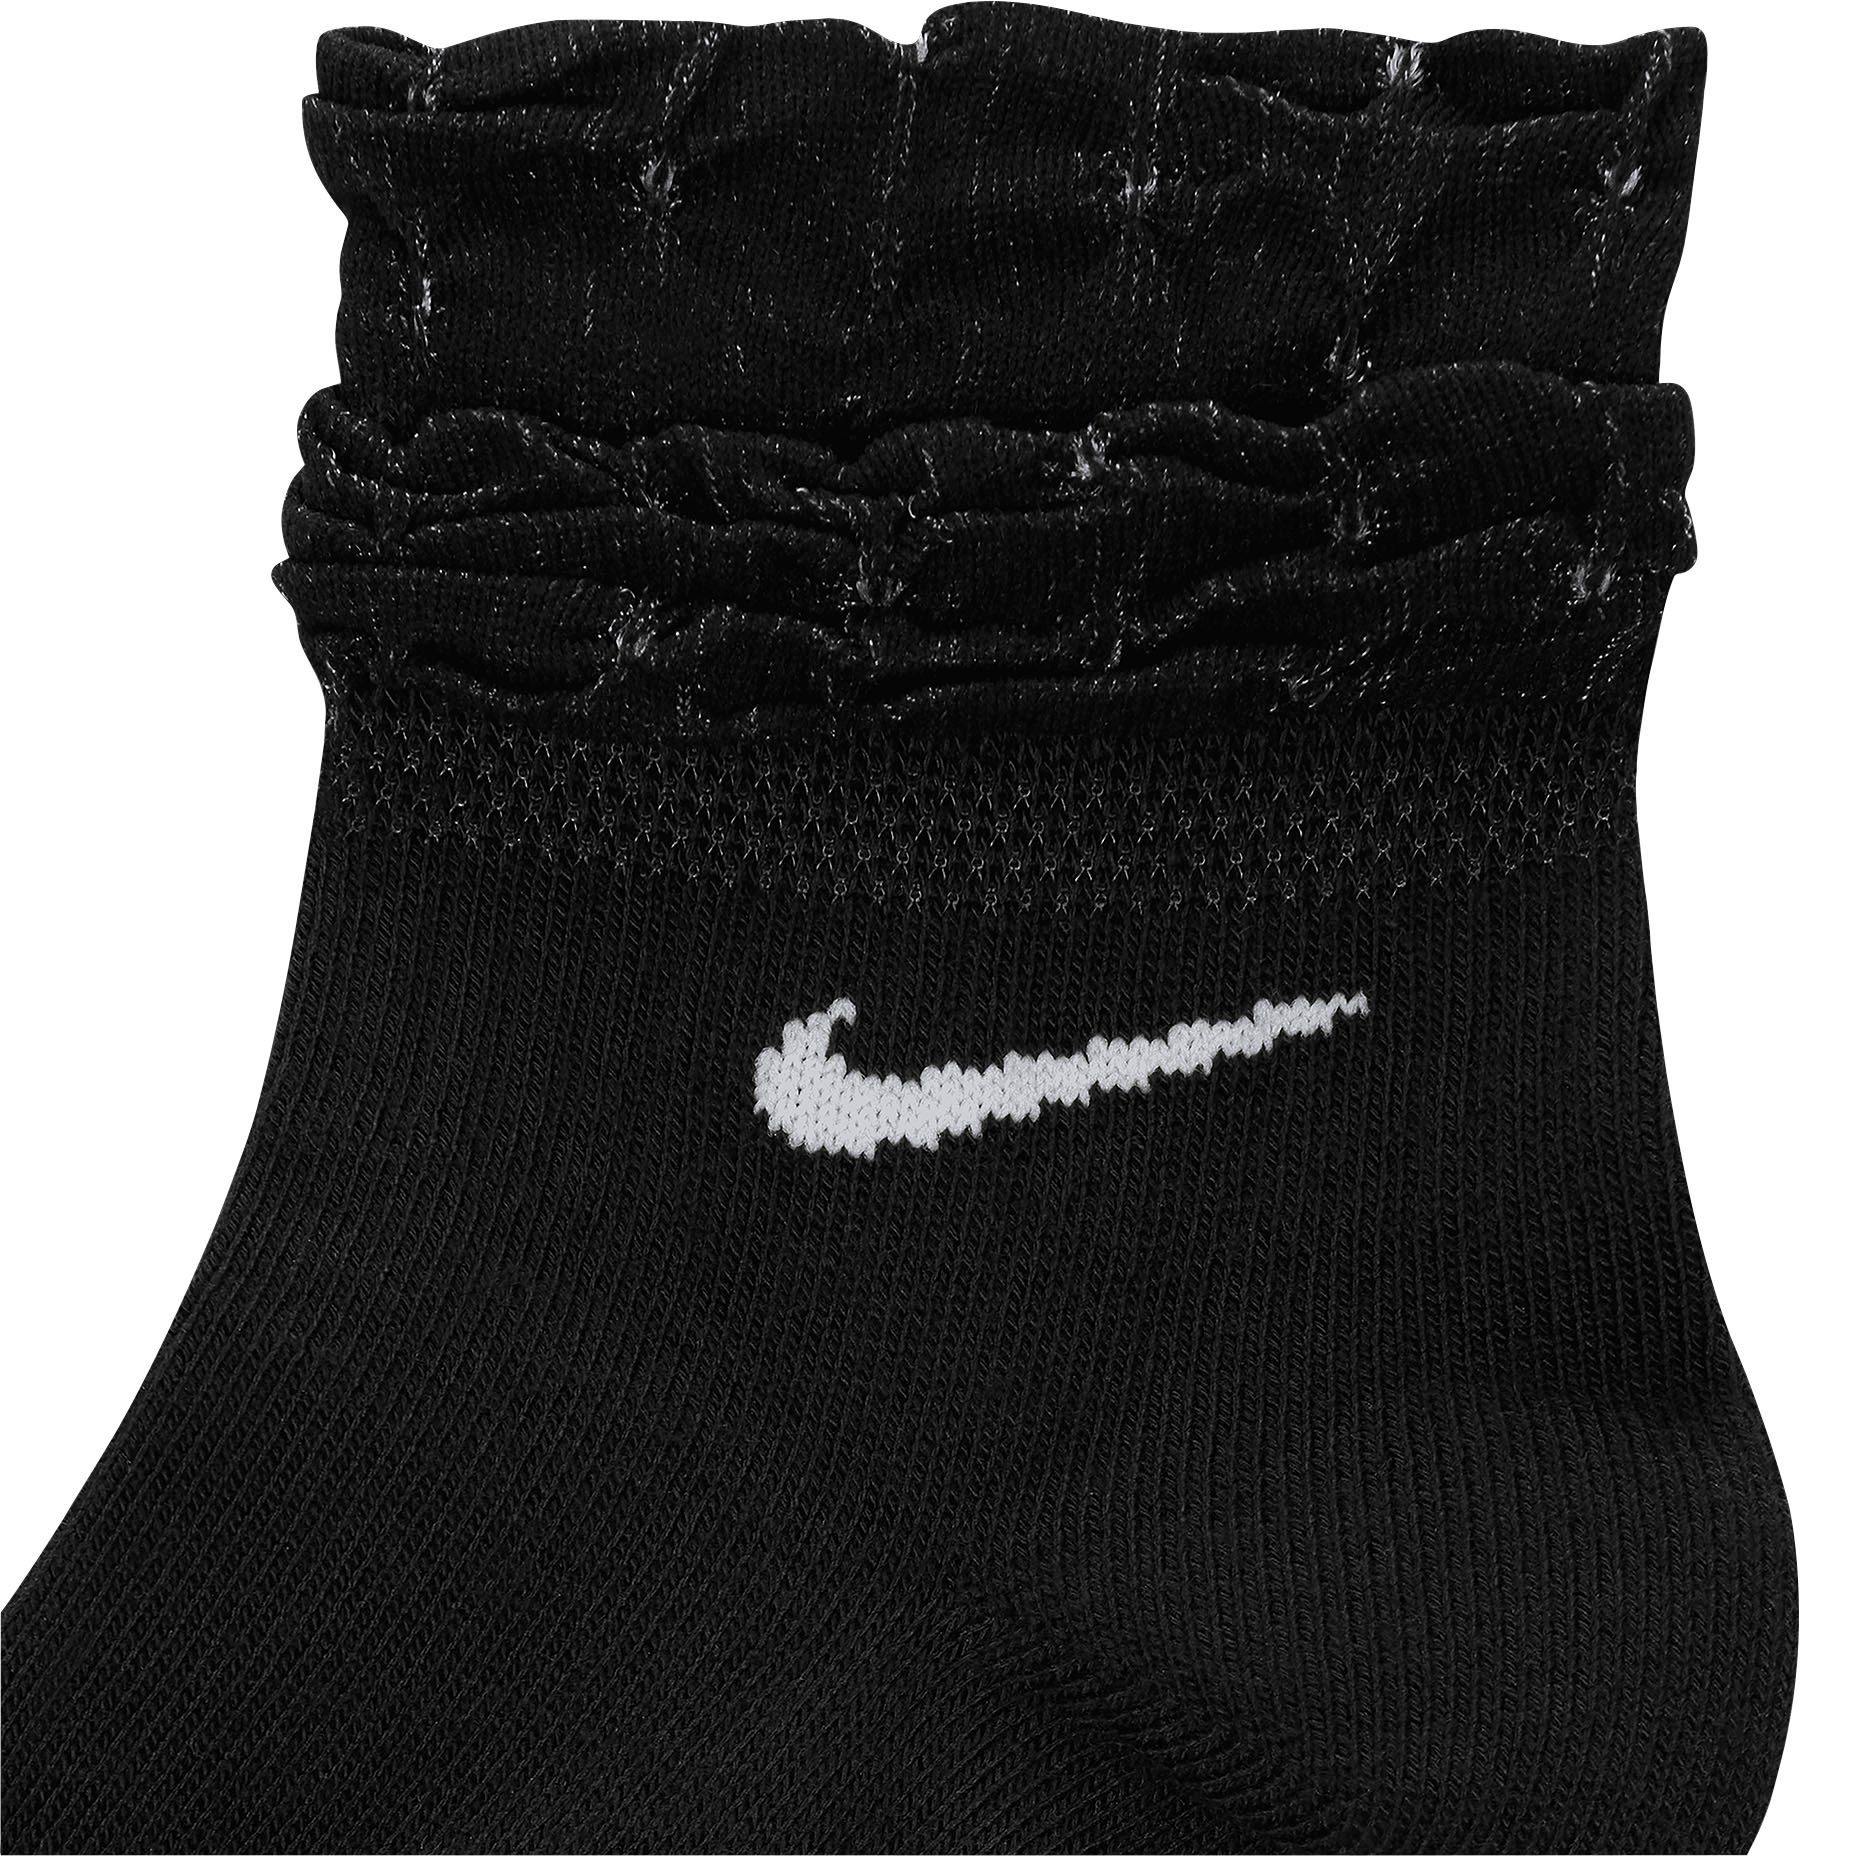 BLACK/WHITE Socks Nike Funktionssocken Training Everyday Ankle